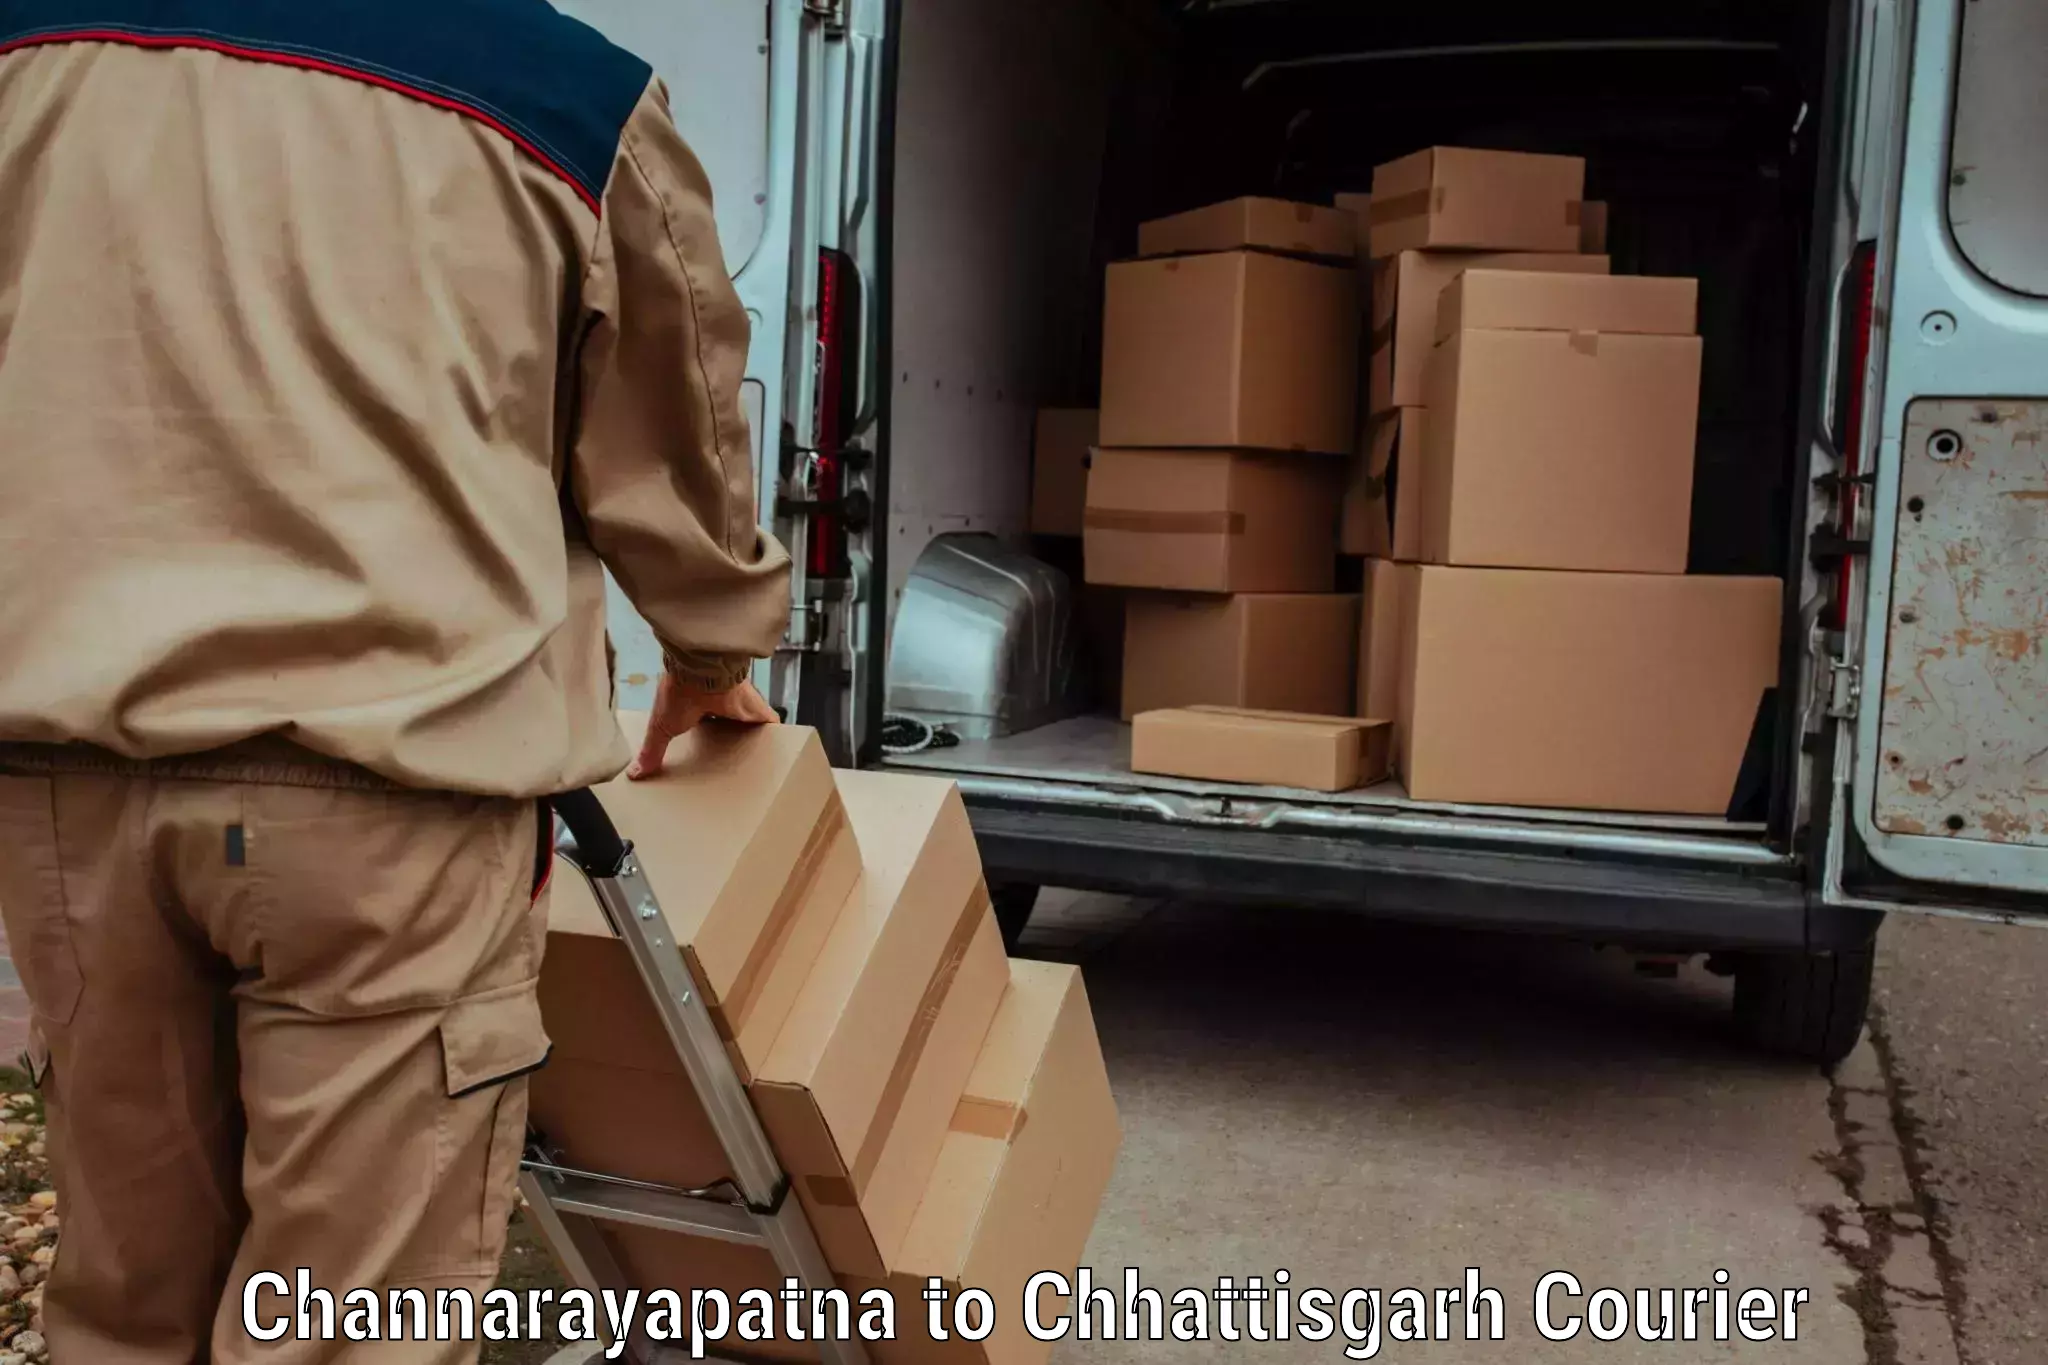 Holiday shipping services Channarayapatna to Korea Chhattisgarh